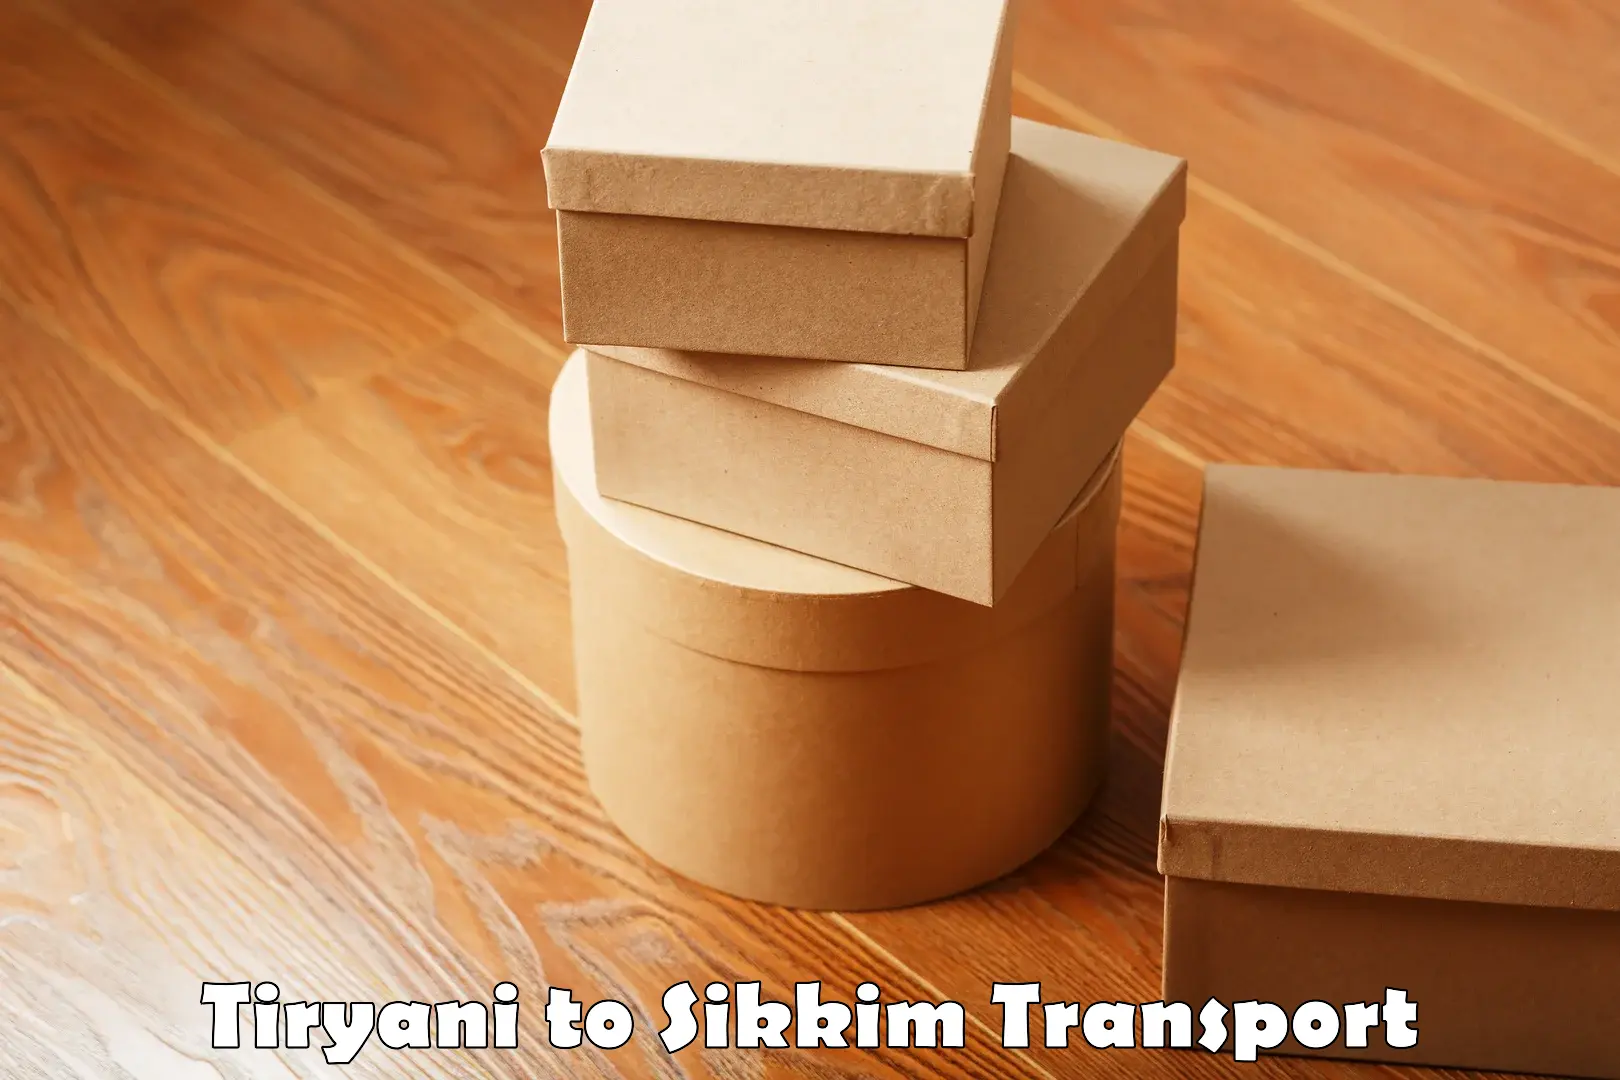 All India transport service Tiryani to Mangan